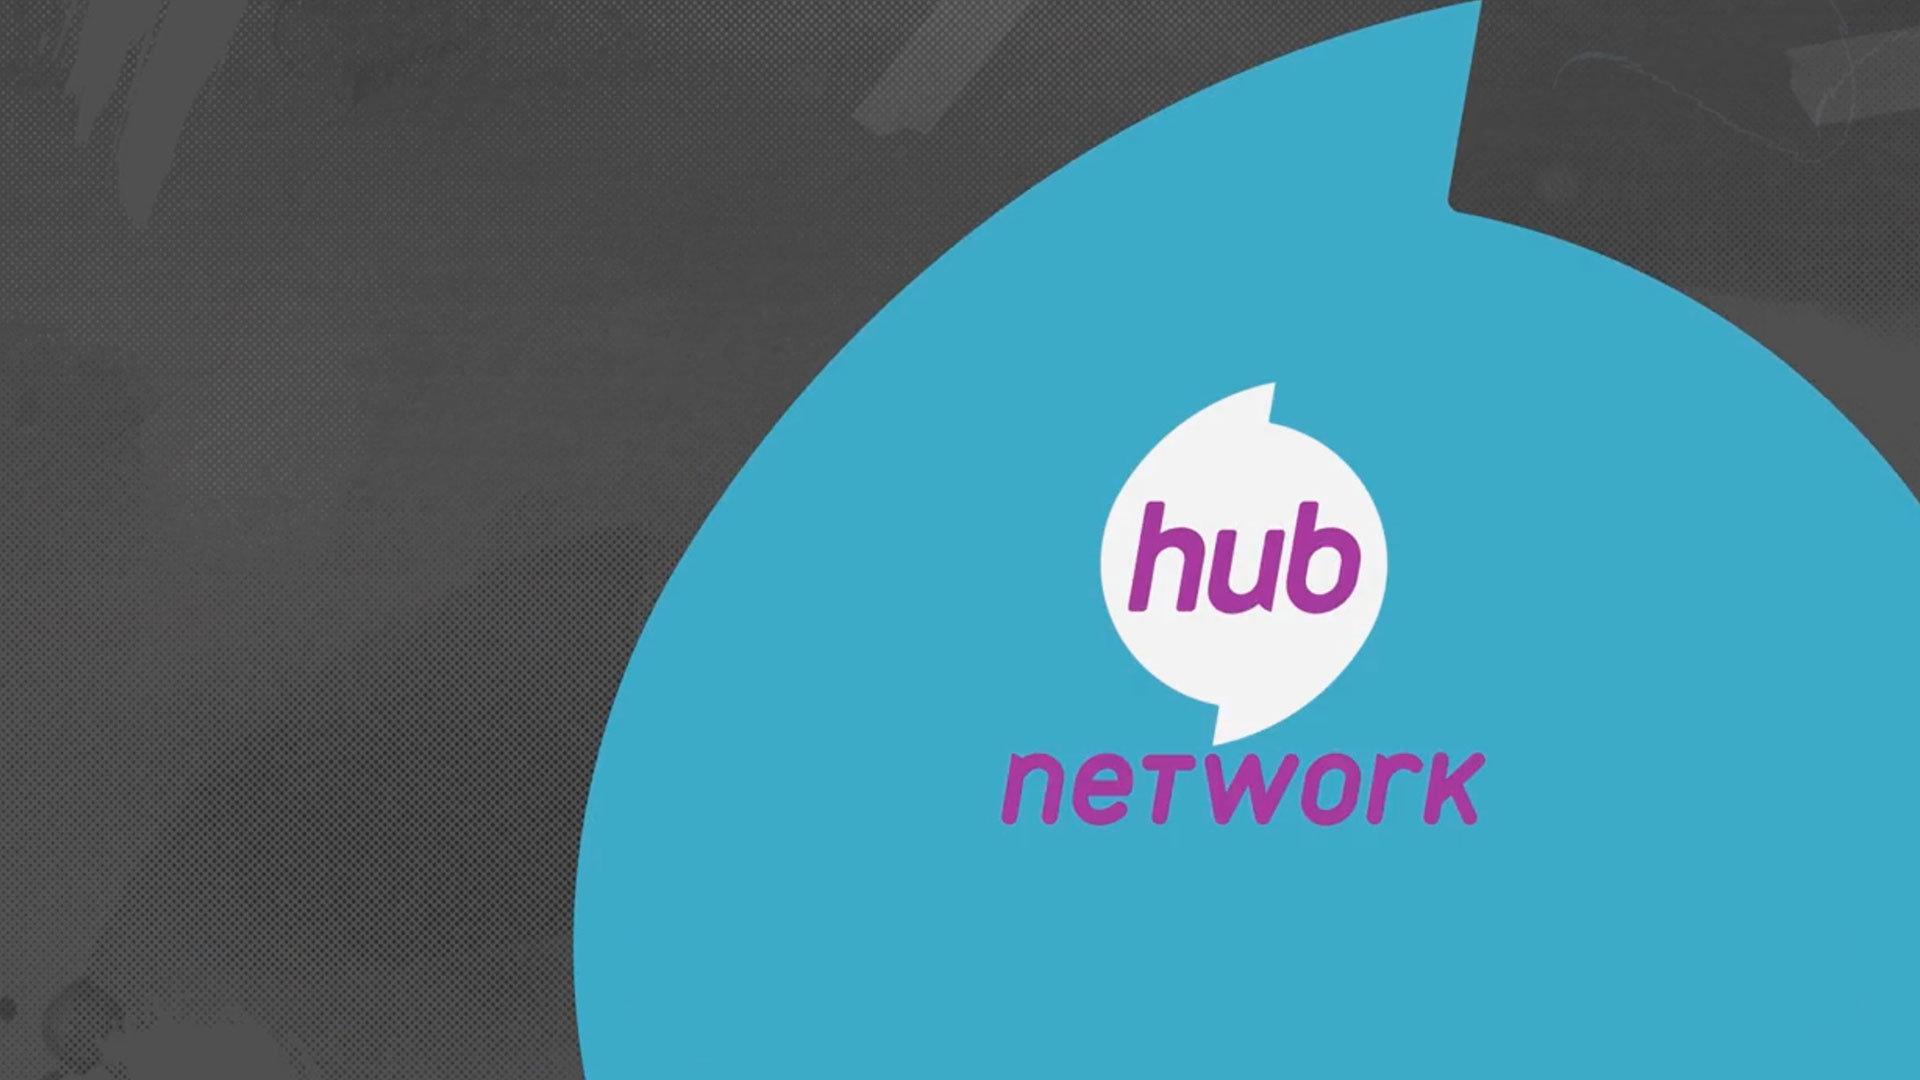 Hub Network Logo - Hub Network Typeface. PS Design. Branding & Design Studio